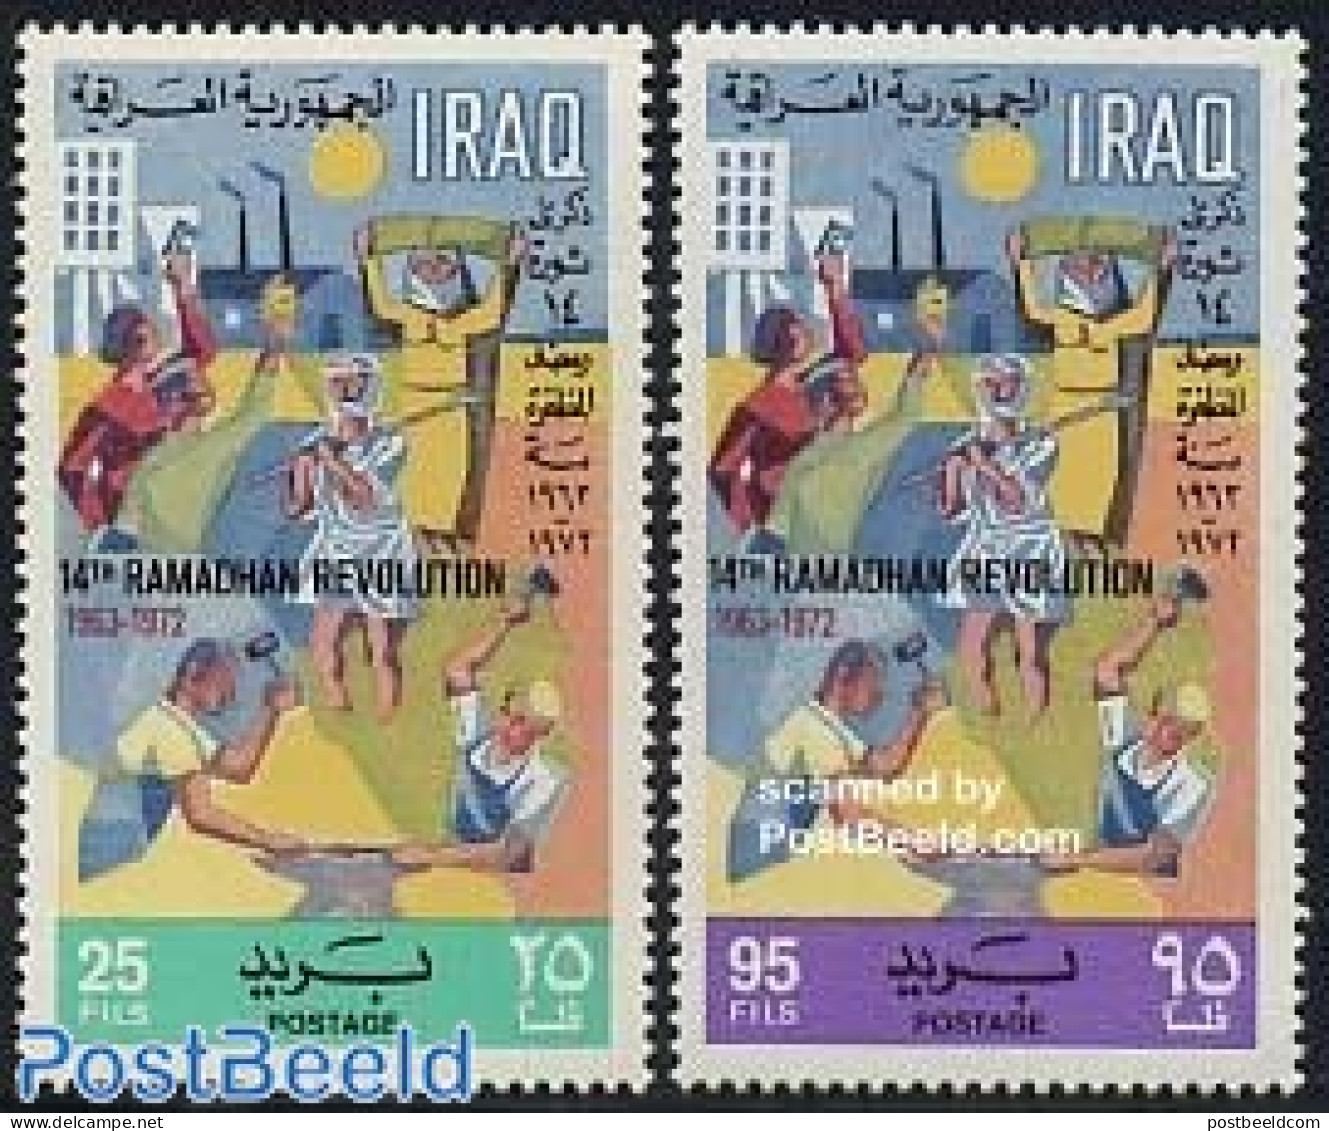 Iraq 1972 Ramadan Revolution 2v, Mint NH - Iraq